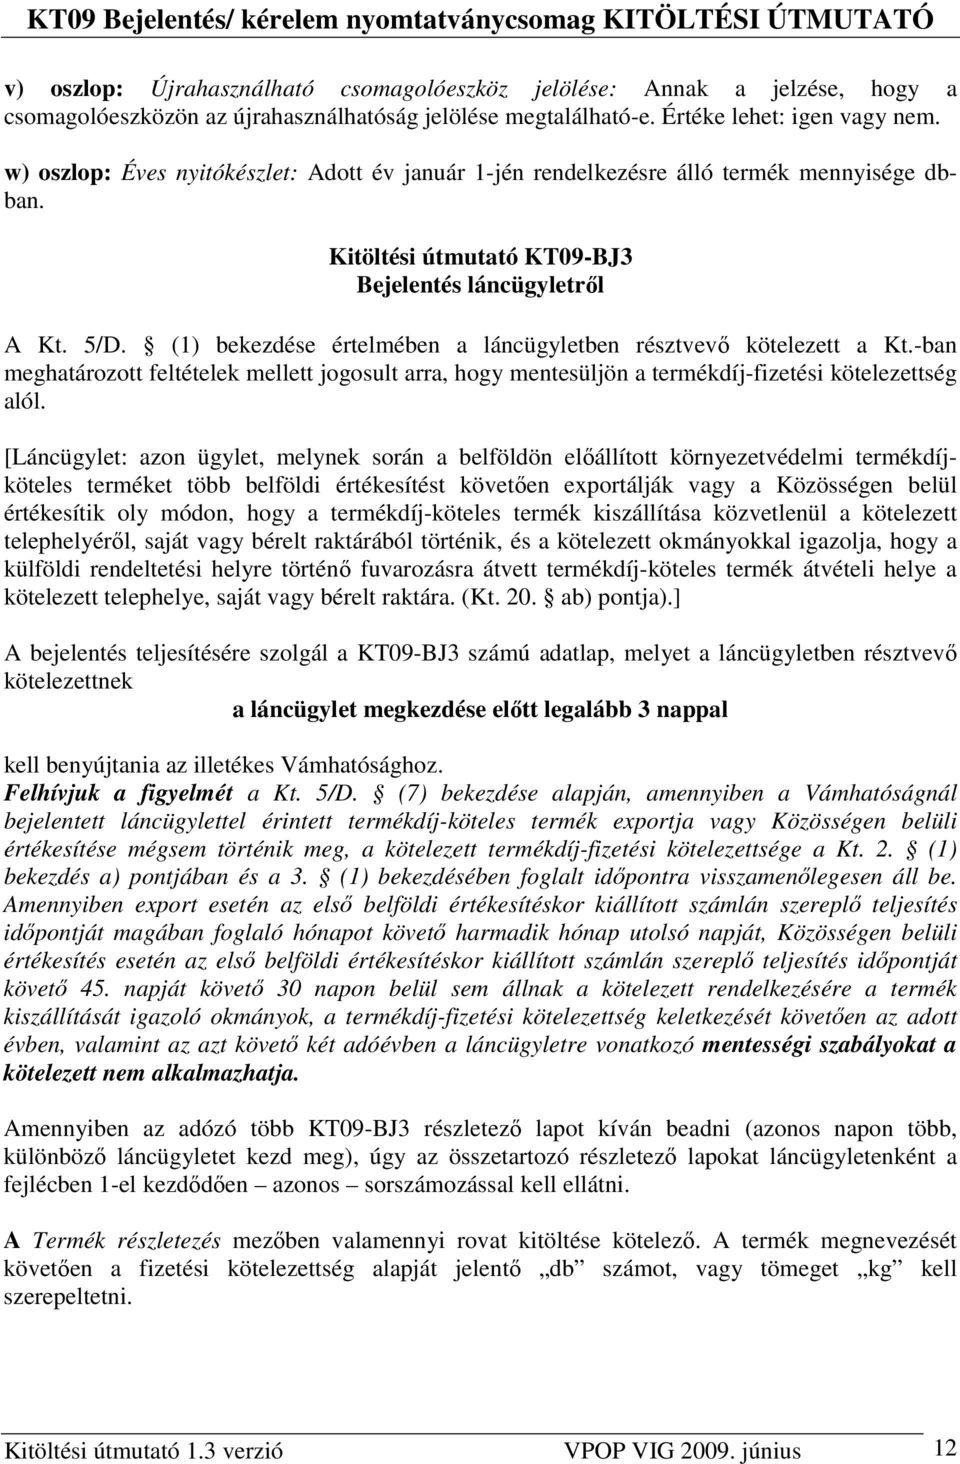 (1) bekezdése értelmében a láncügyletben résztvevı kötelezett a Kt.-ban meghatározott feltételek mellett jogosult arra, hogy mentesüljön a termékdíj-fizetési kötelezettség alól.